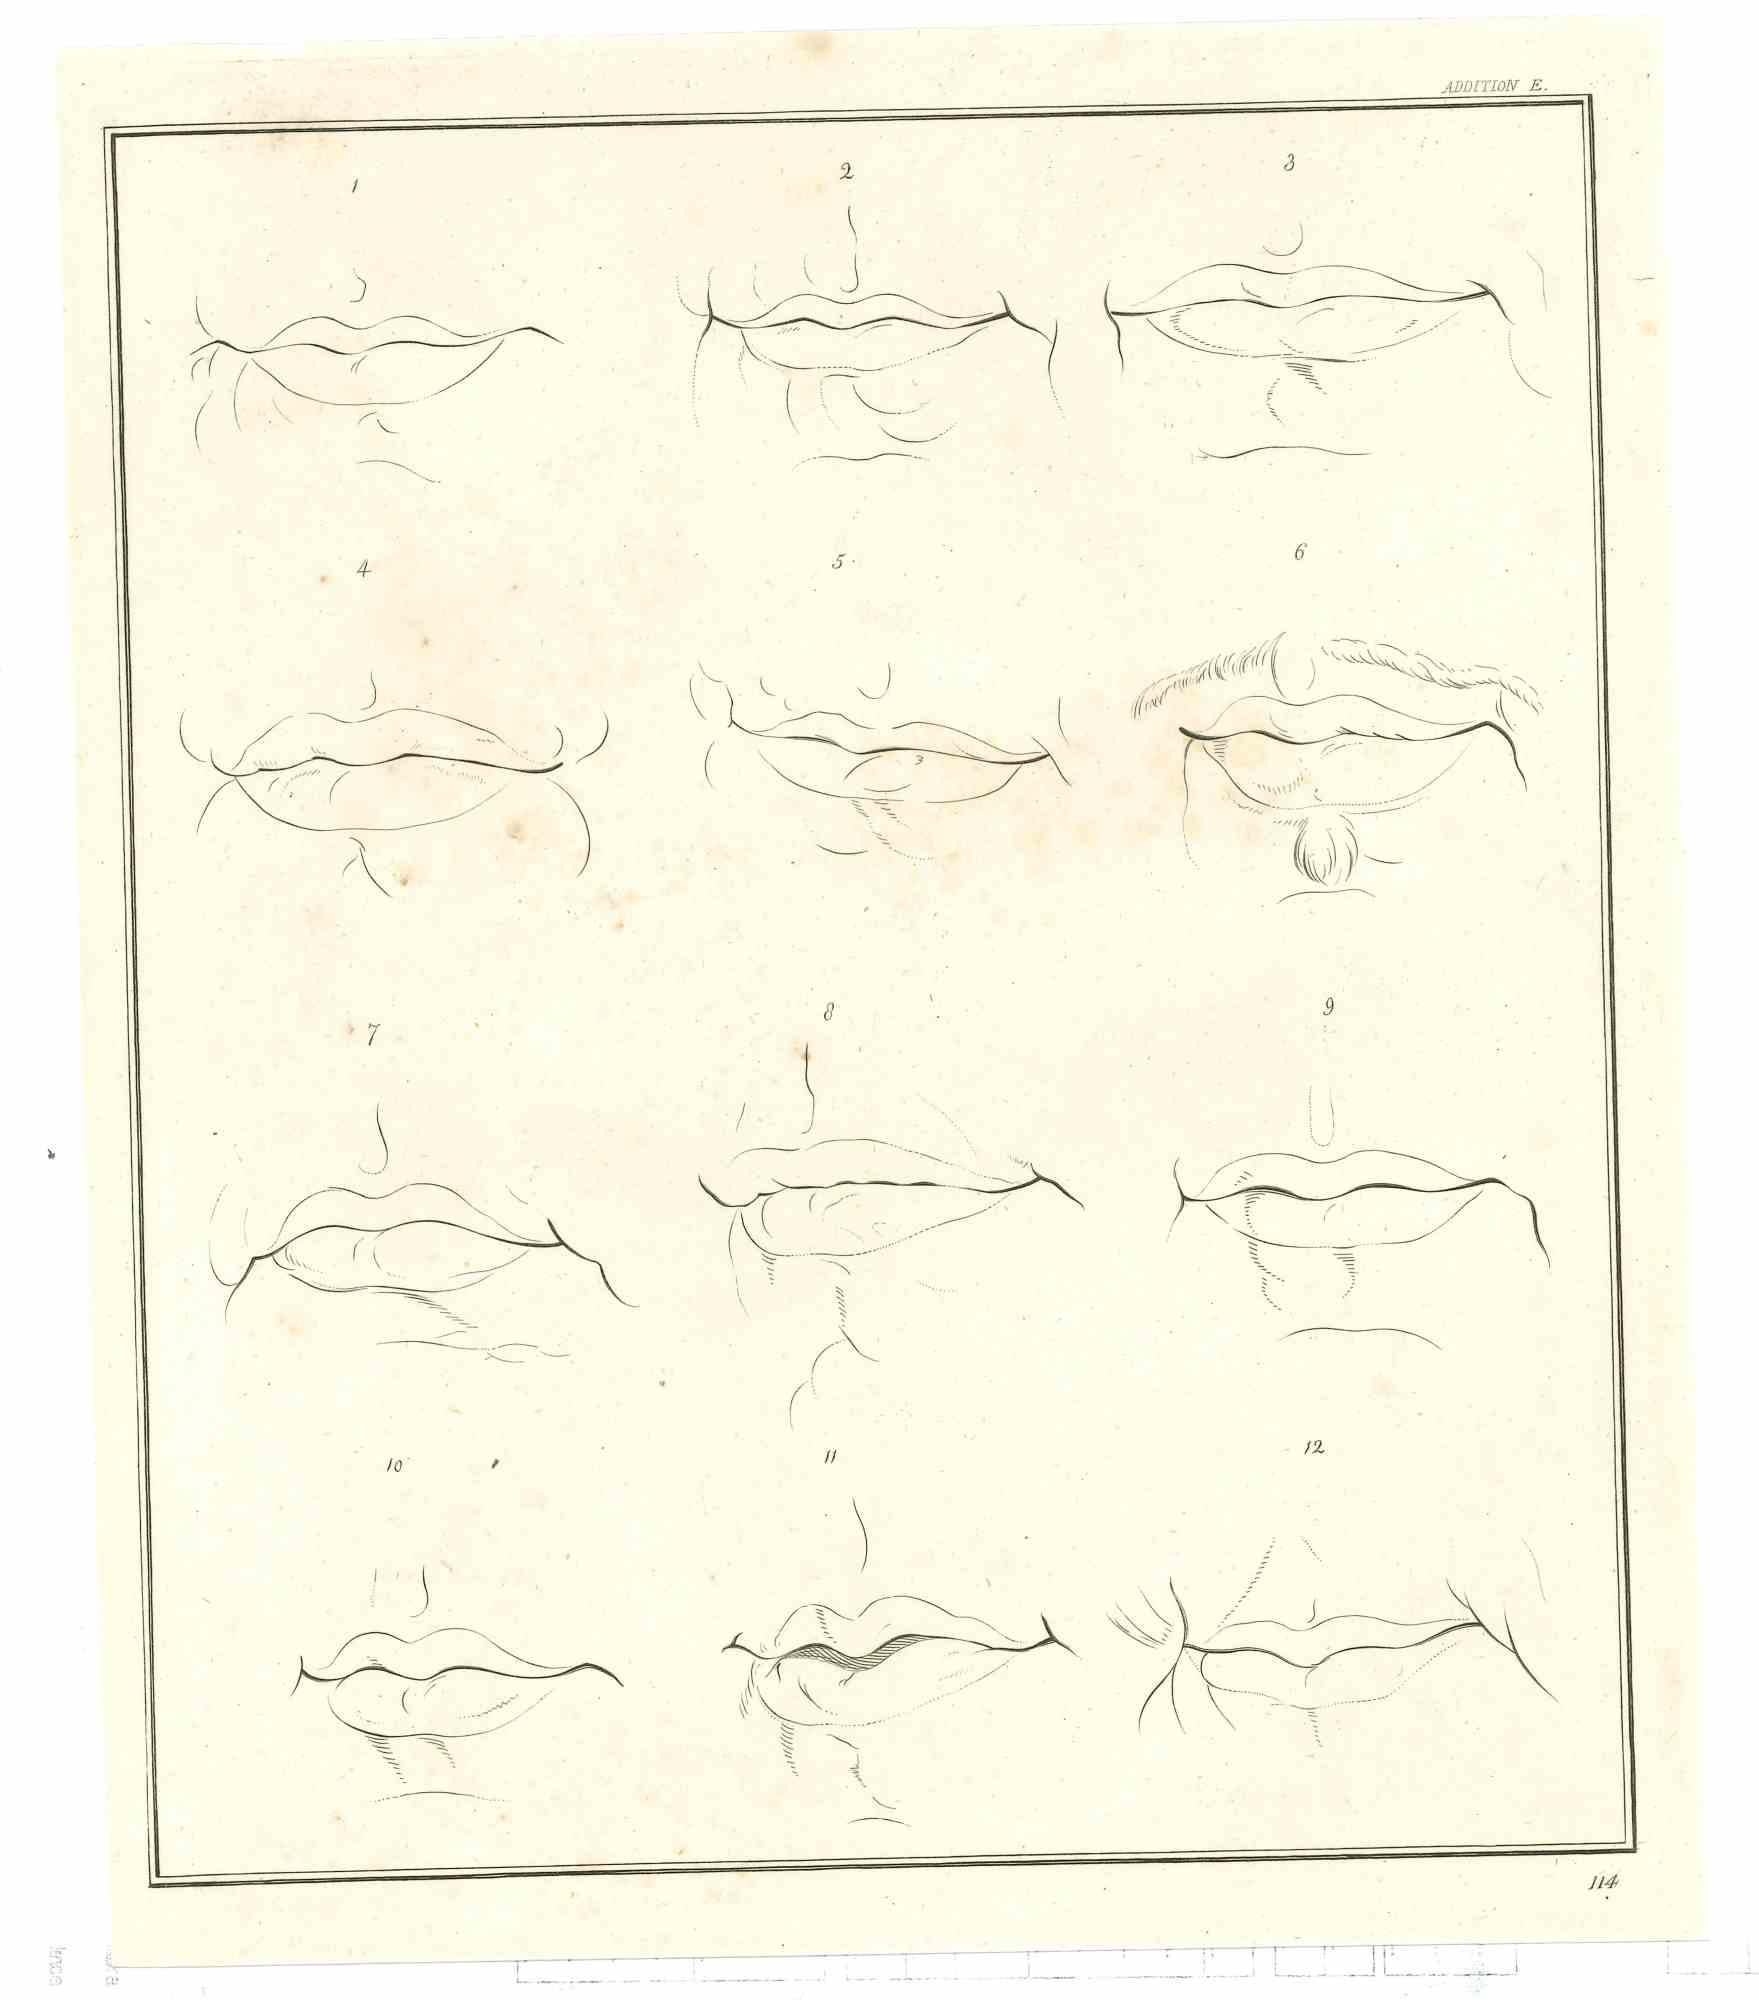 The Physiognomy - Lips ist eine Original-Radierung von Thomas Holloway für Johann Caspar Lavaters "Essays on Physiognomy, Designed to Promote the Knowledge and the Love of Mankind", London, Bensley, 1810. 

Guter Zustand mit leichten Stockflecken.